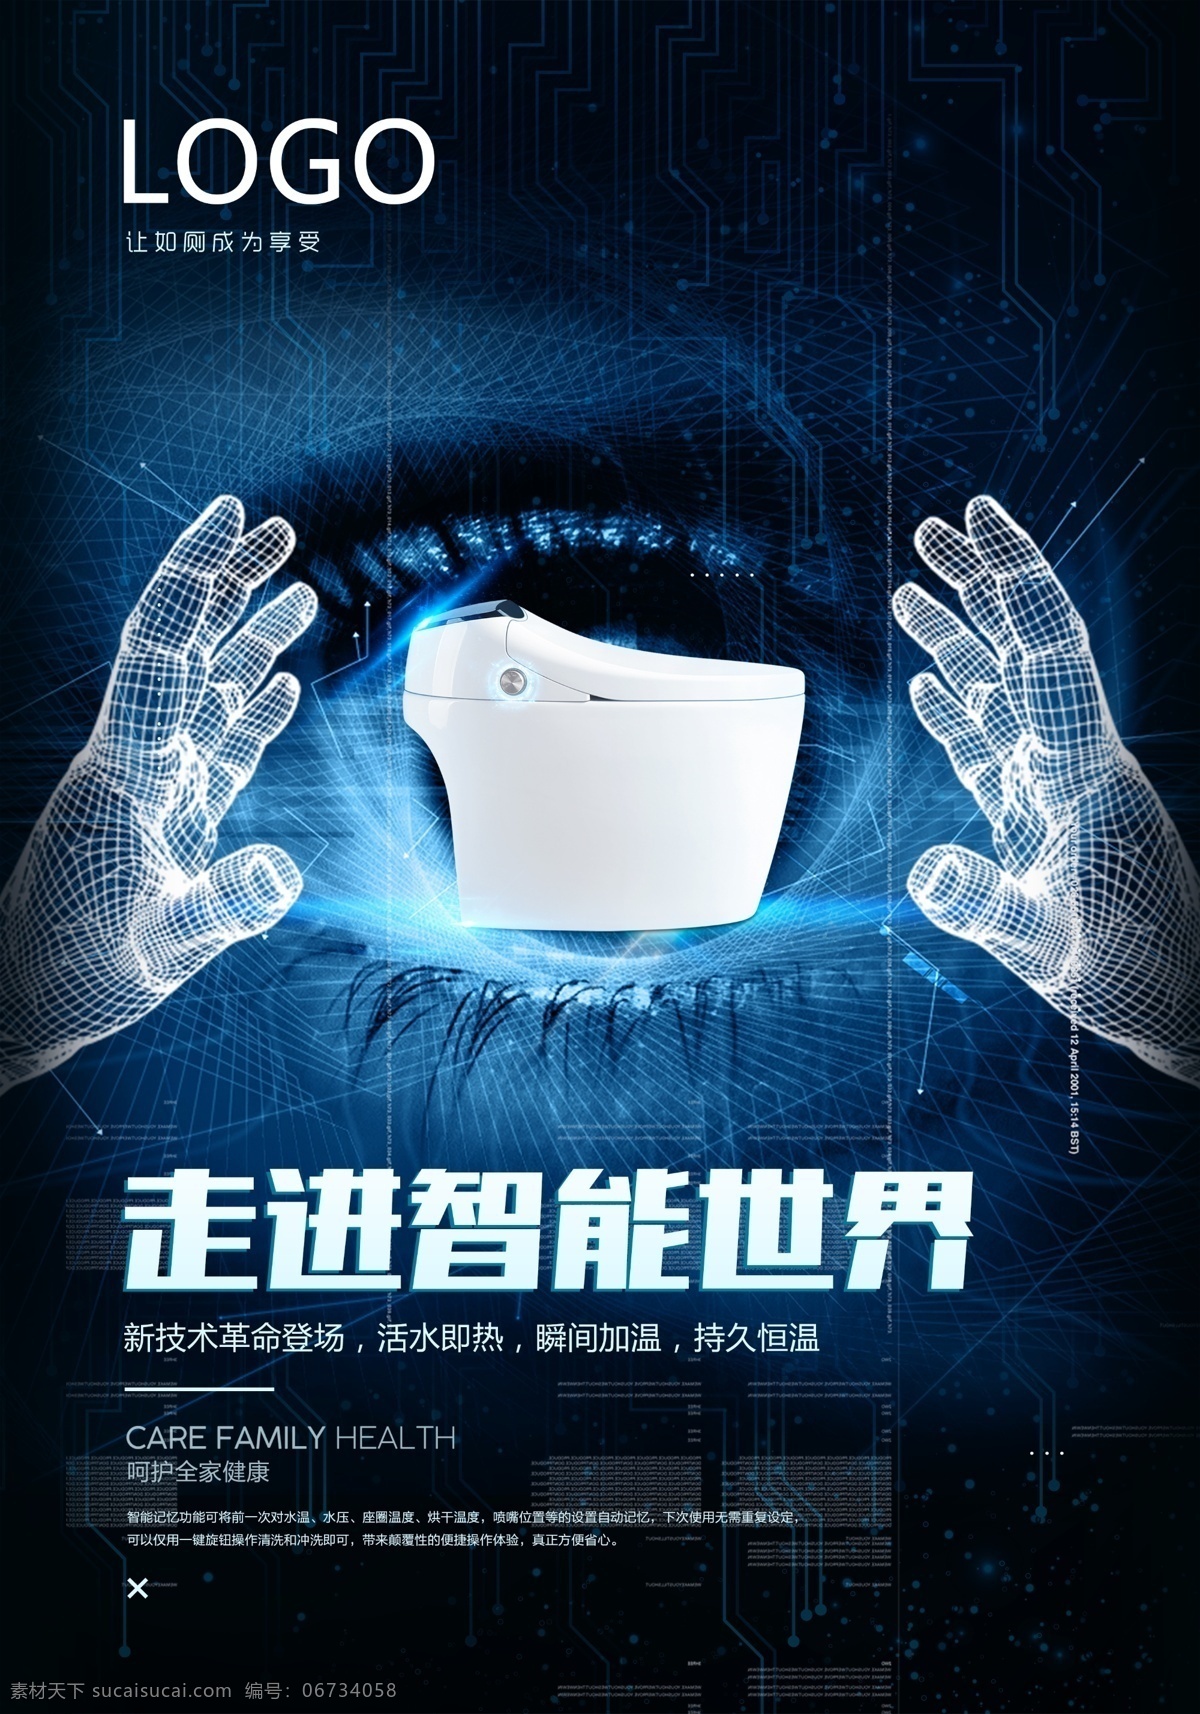 智能 马桶 科技 海报 蓝色科技 科技海报 蓝色 智能马桶海报 智能马桶 智能马桶广告 智能世界